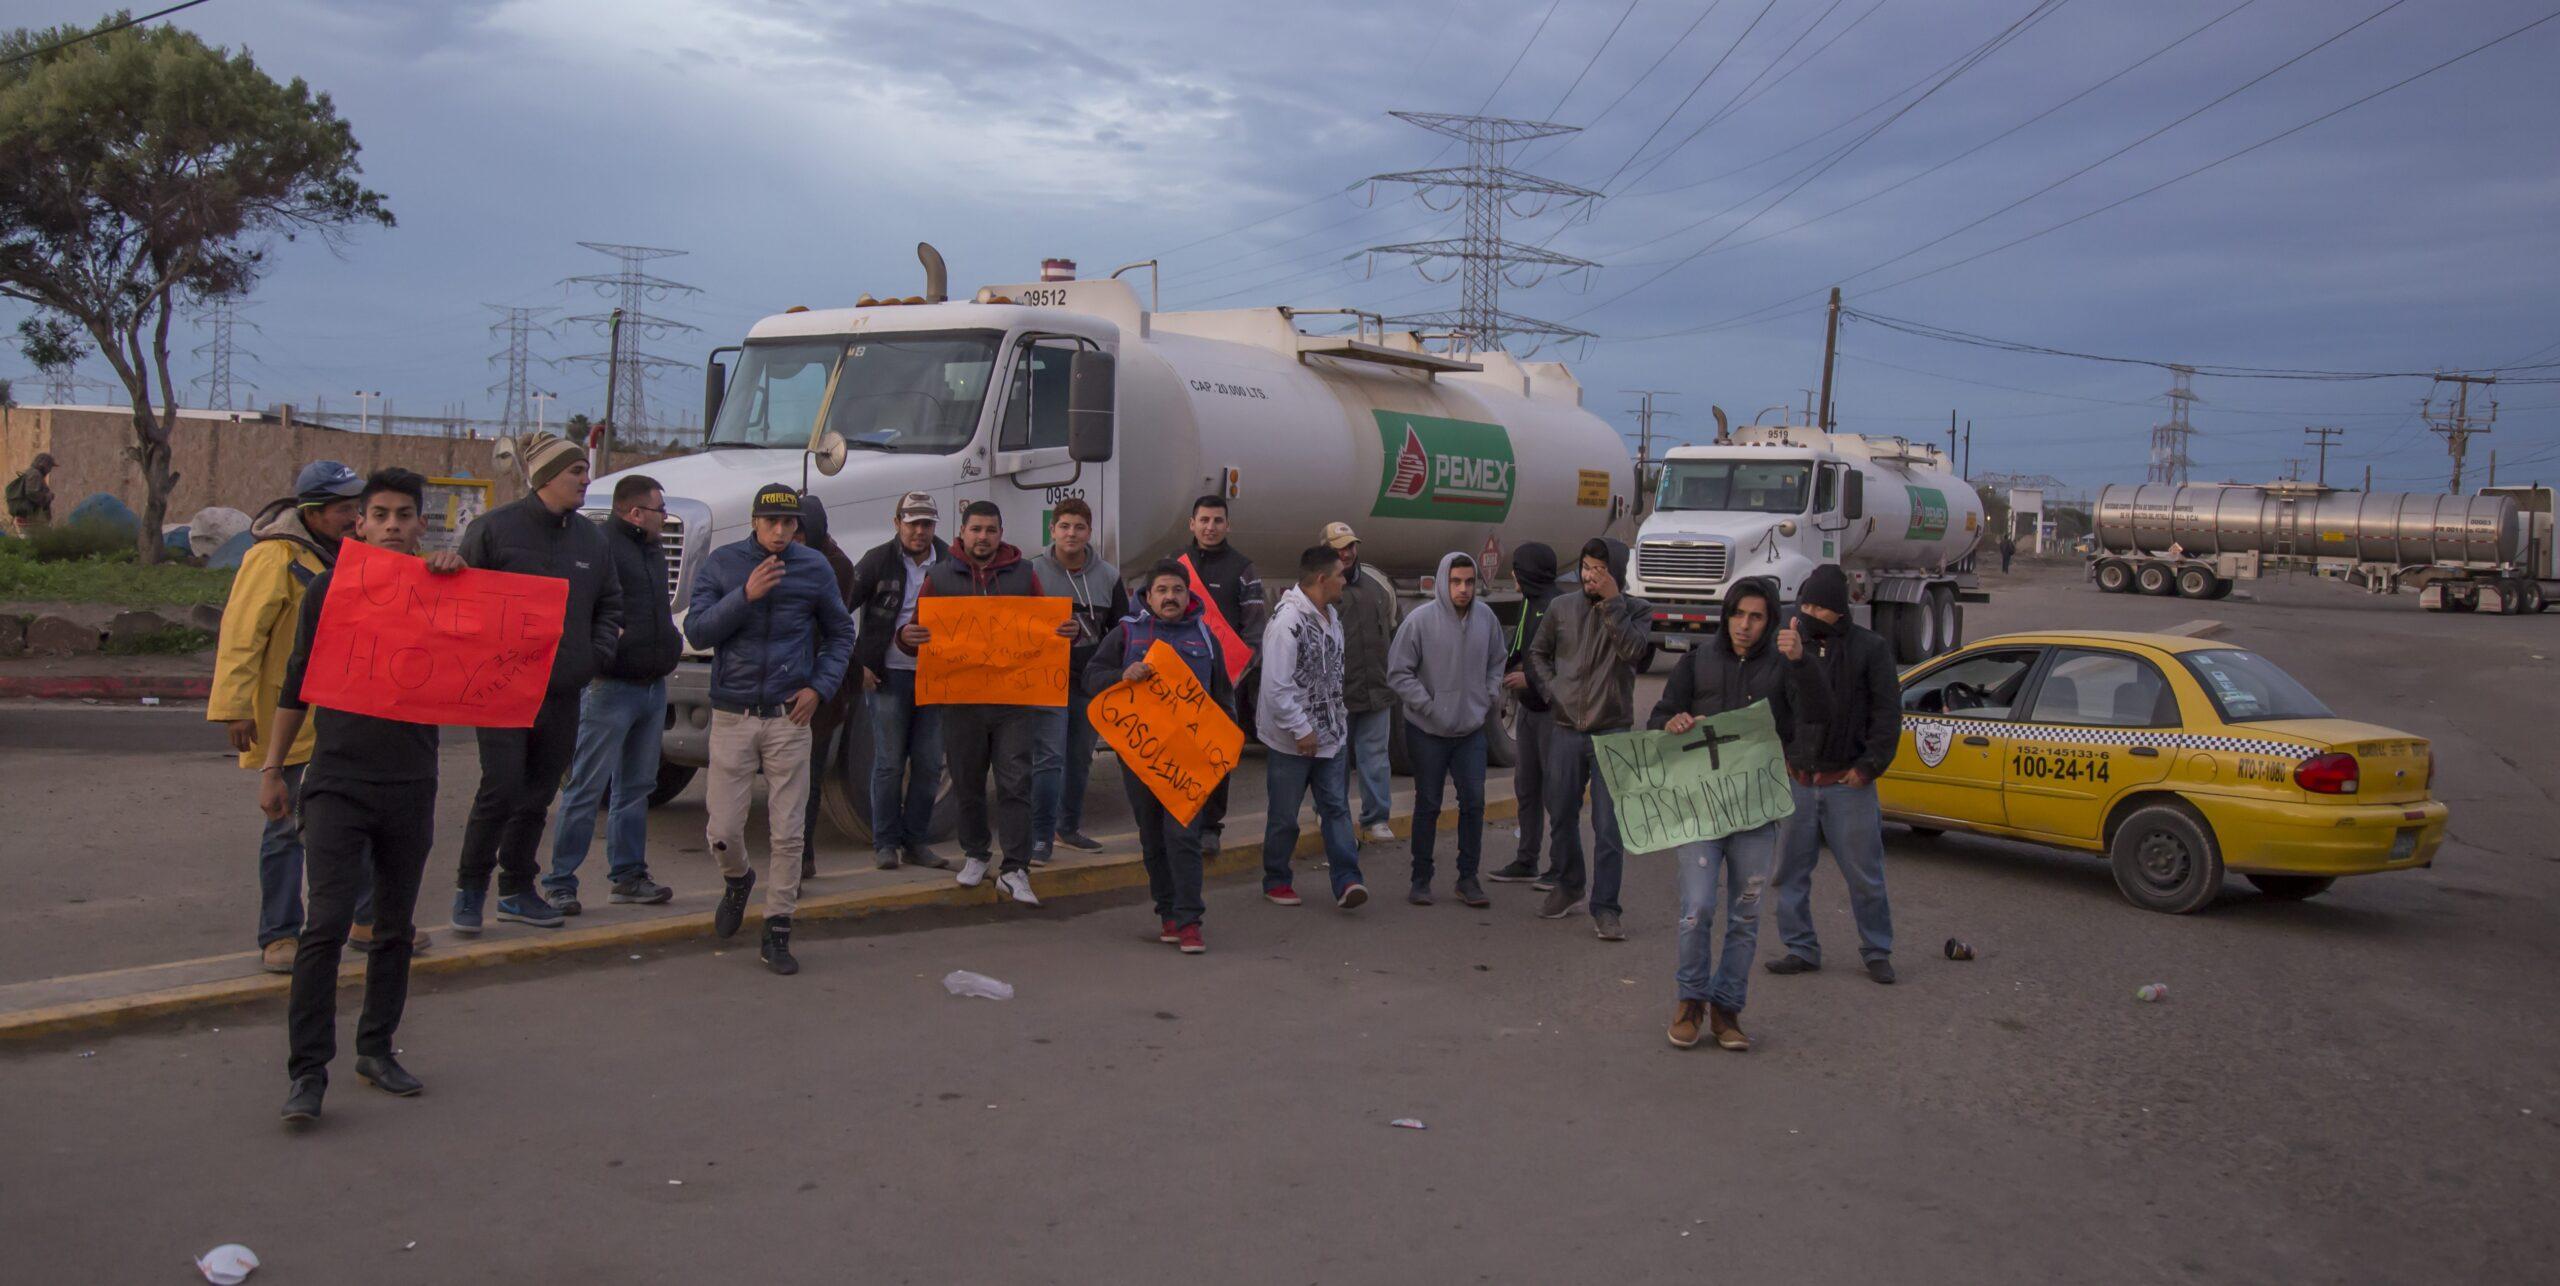 Gendarmes agreden a 3 reporteros durante desalojo de planta de Pemex en Tijuana